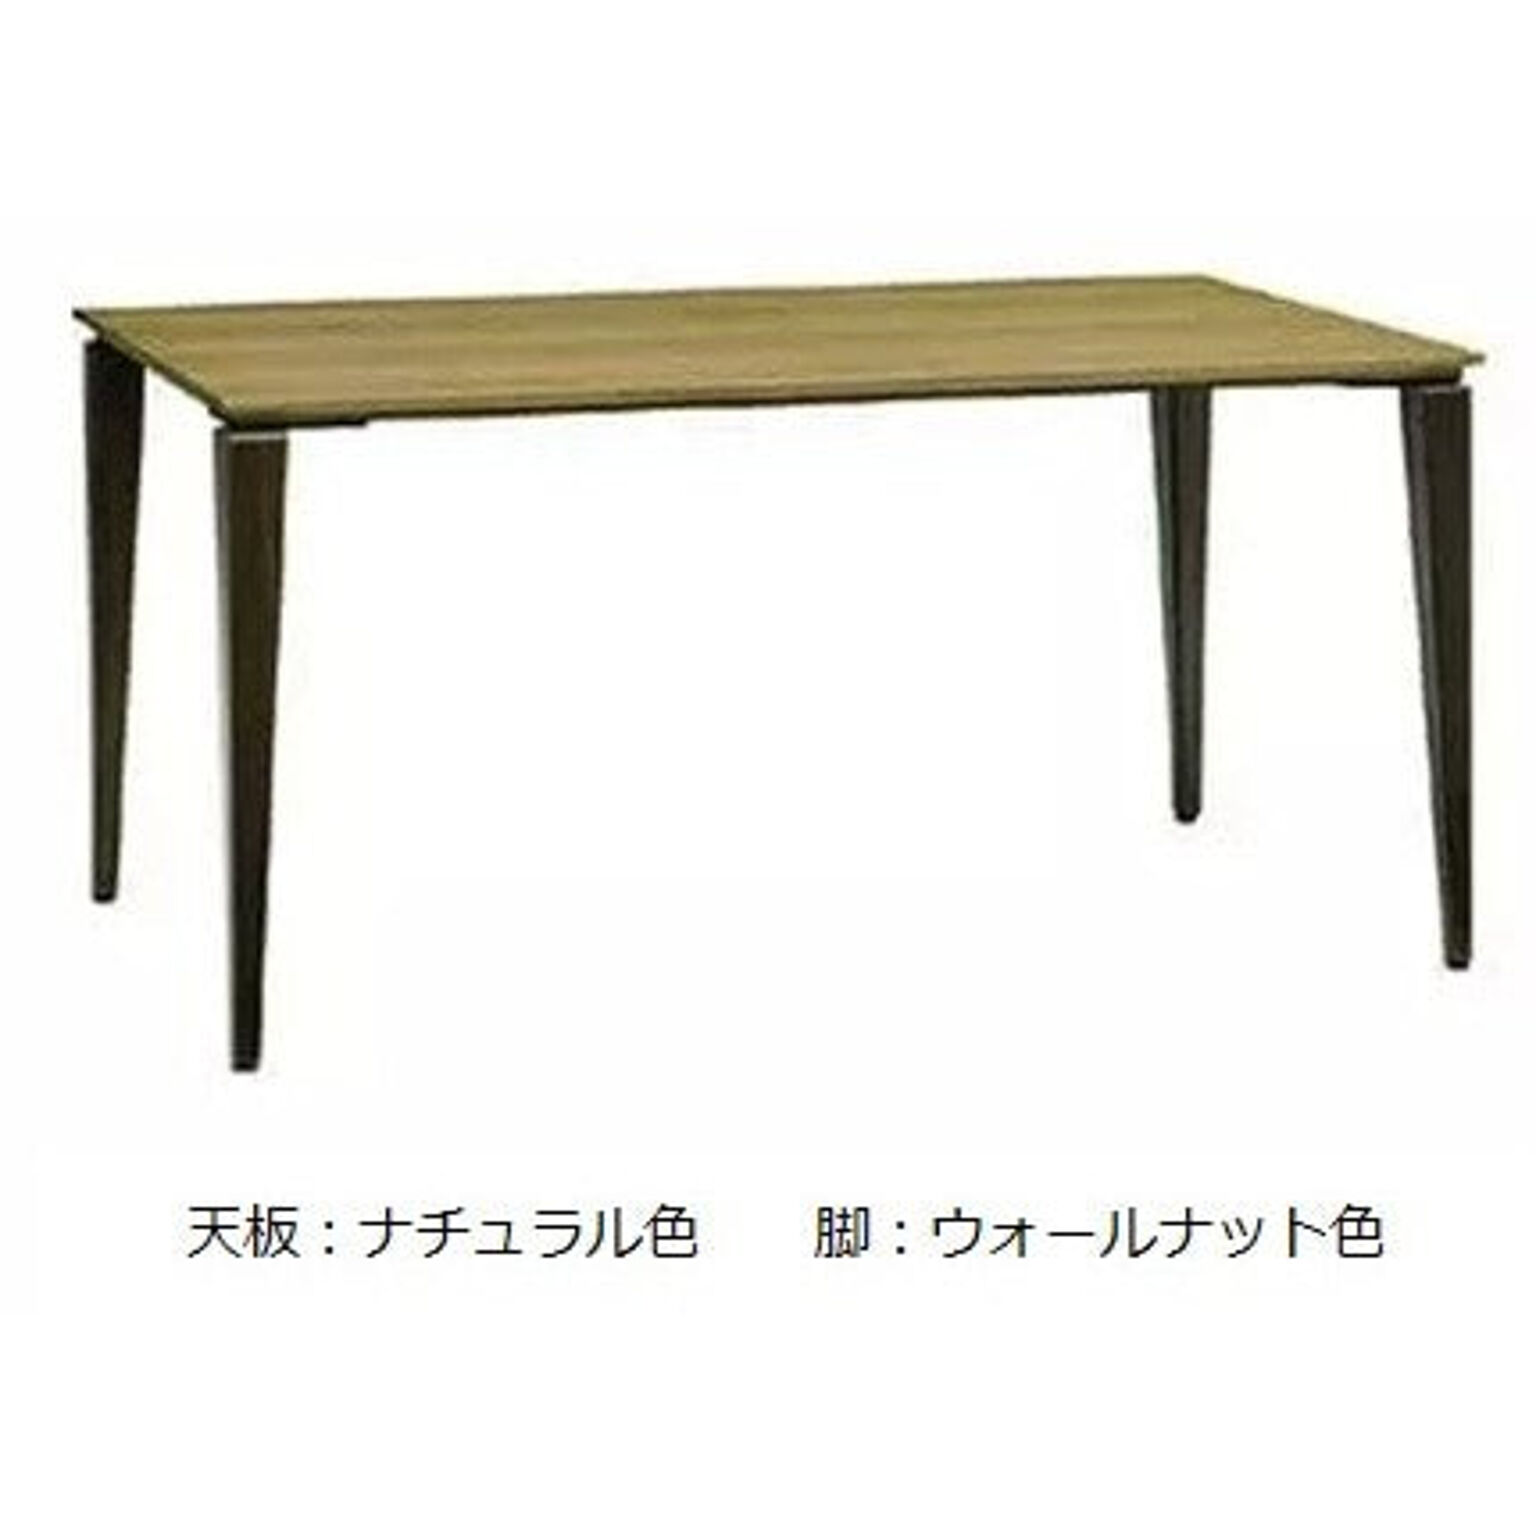 ダイニングテーブル カラー4色 幅150 奥行80 高さ71.5 長方形 食卓テーブル 作業テーブル DUAL-NUOVO デュアル・ヌーボ DULNT-150 MAEDA FUNITURE